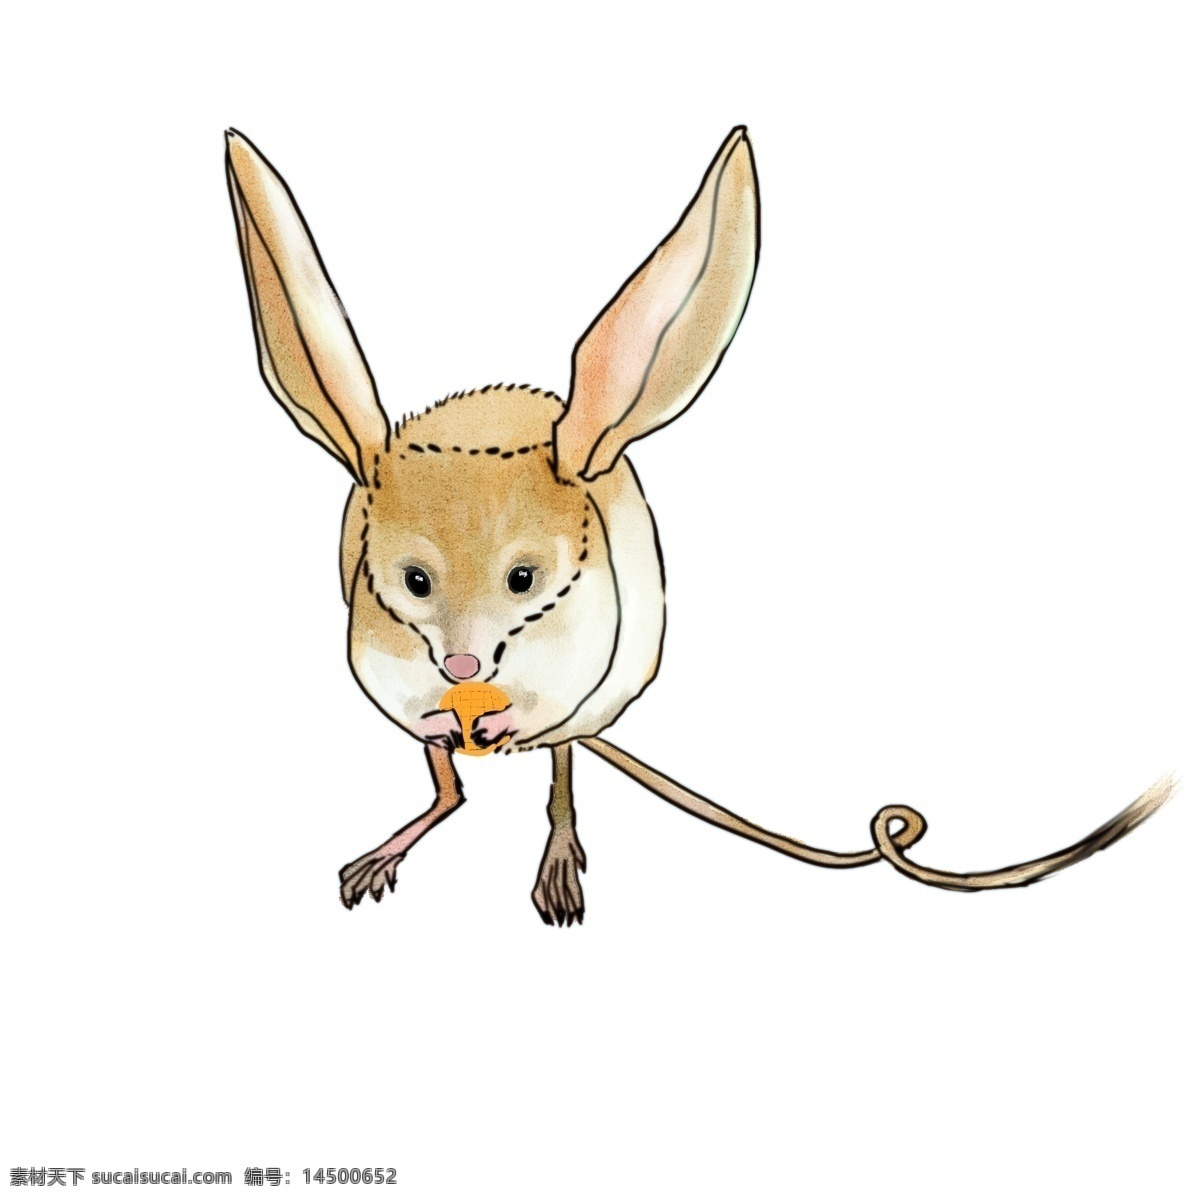 手绘 水彩 绘 卡通 沙漠 鼠 动漫动物 动物装饰 卡通动画 扁平动物 动漫 动物 可爱 插画 油彩 绘本 沙漠鼠 老鼠